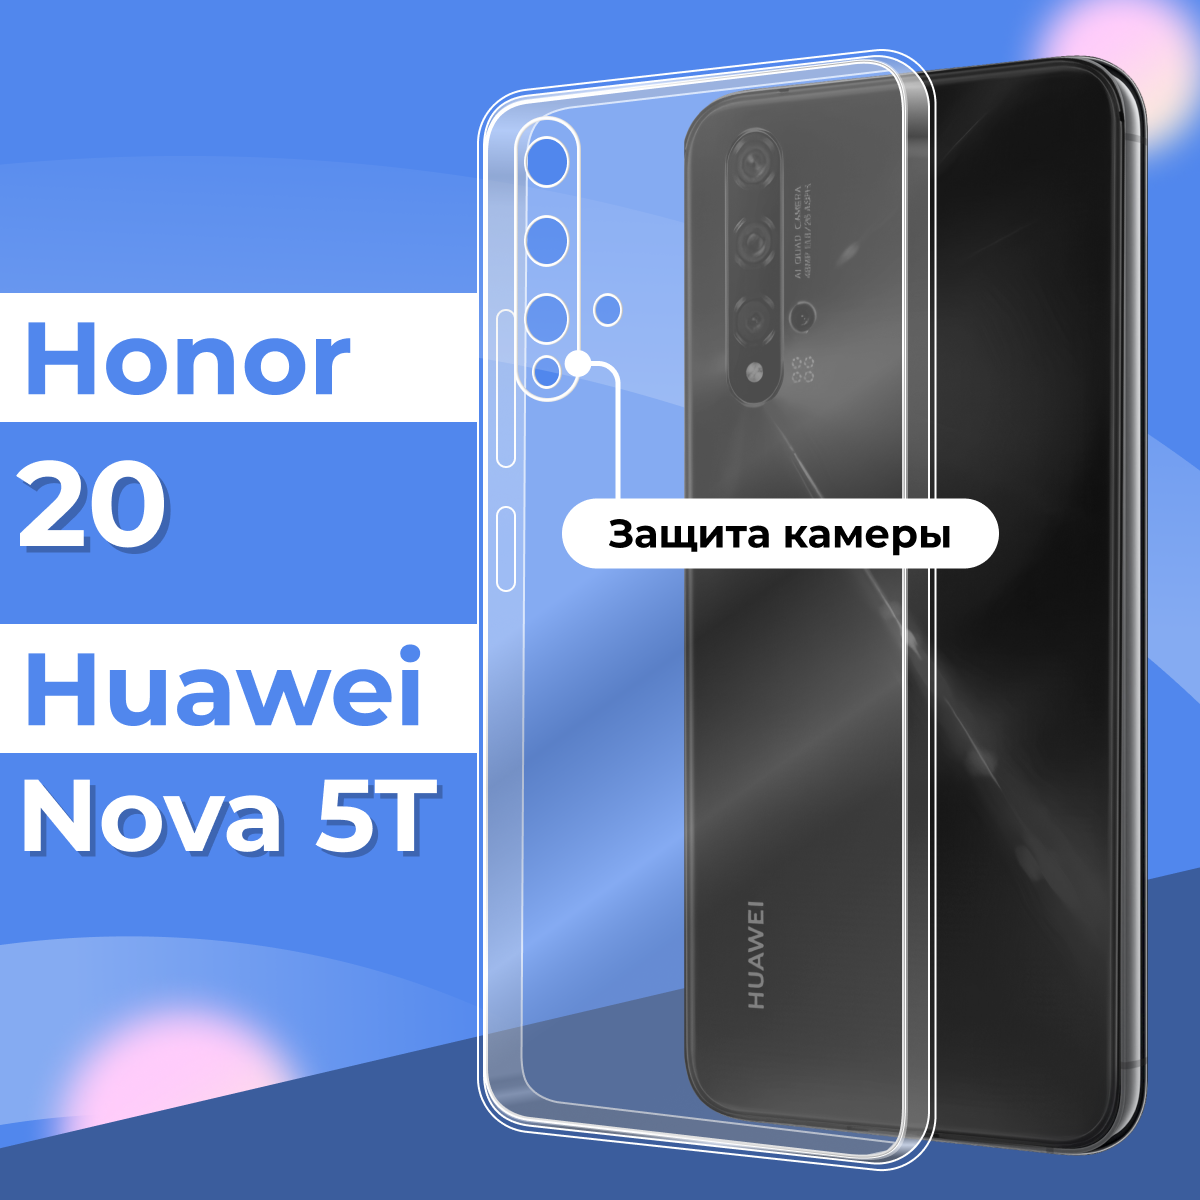 Прозрачный силиконовый чехол с защитой камеры для Huawei Honor 20 и Nova 5T / Тонкий противоударный чехол на телефон Хуавей Хонор 20 и Нова 5Т